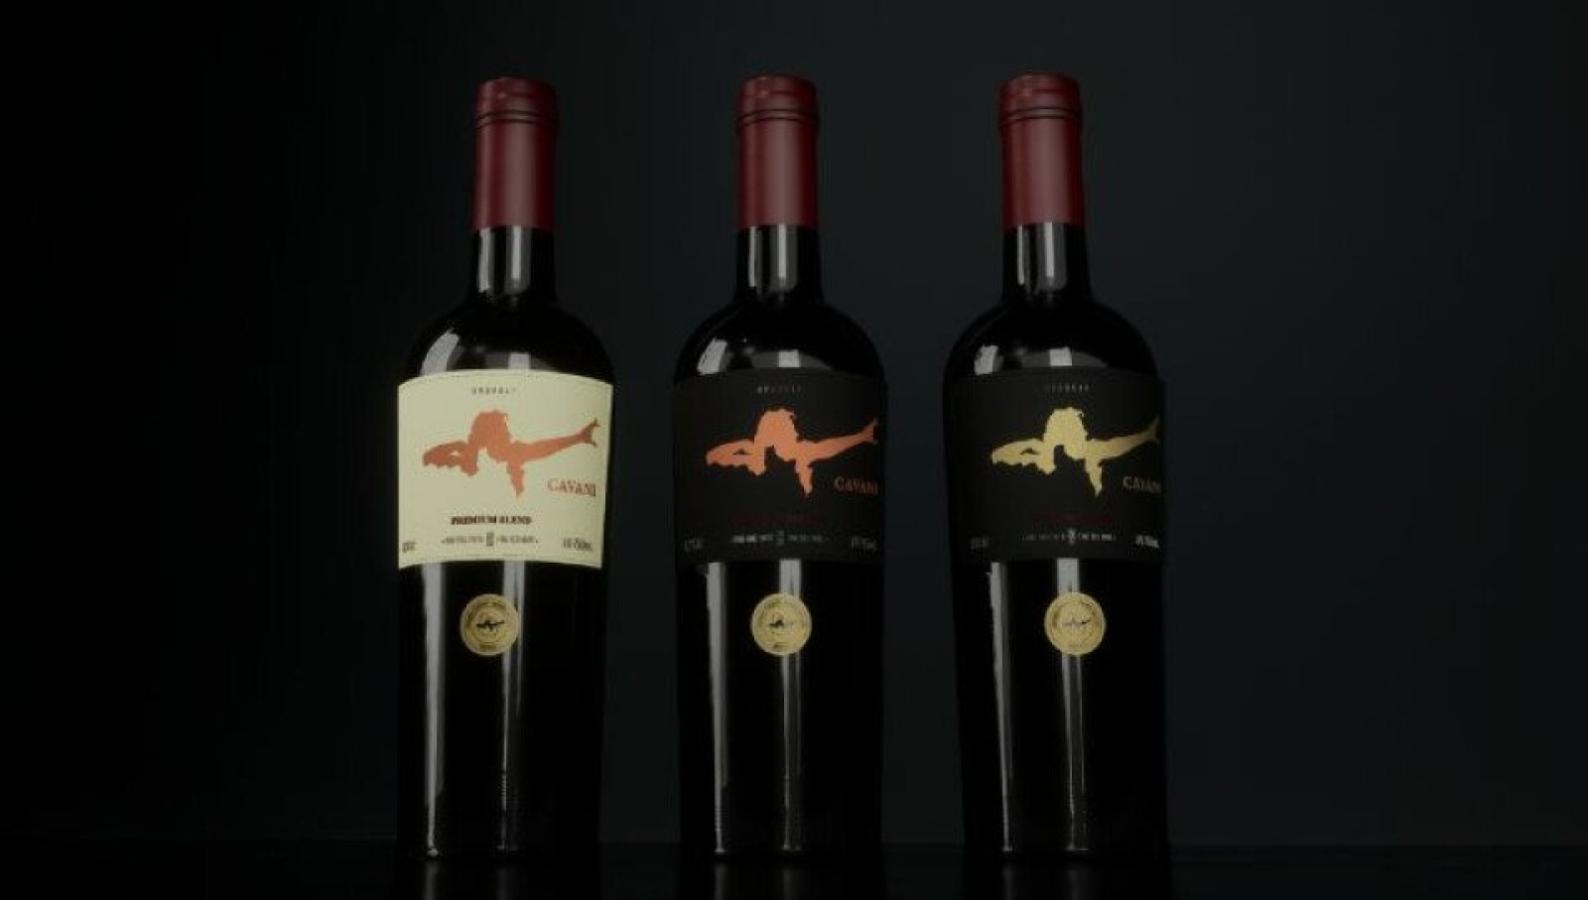 Imagen El vino de Cavani, en sus tres presentaciones.